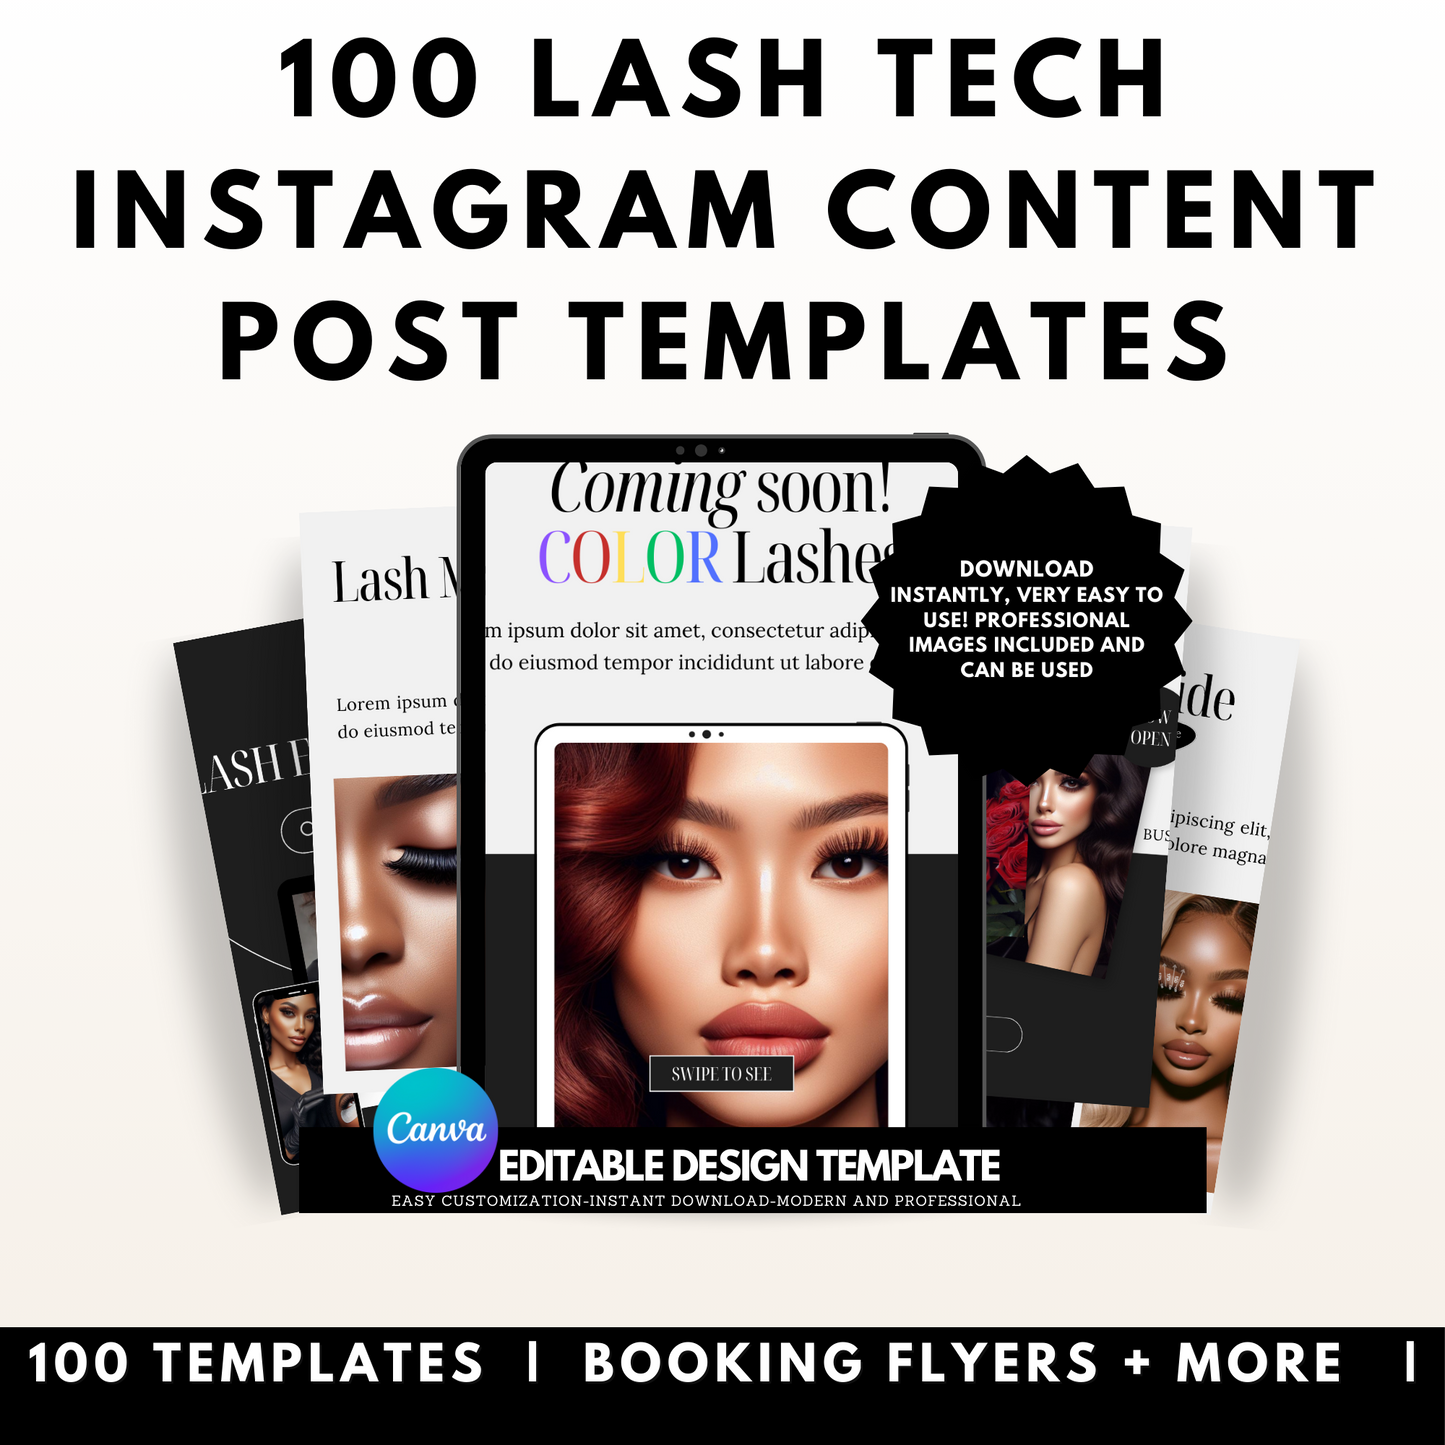 100 Lash Tech Instagram Content Post Templates